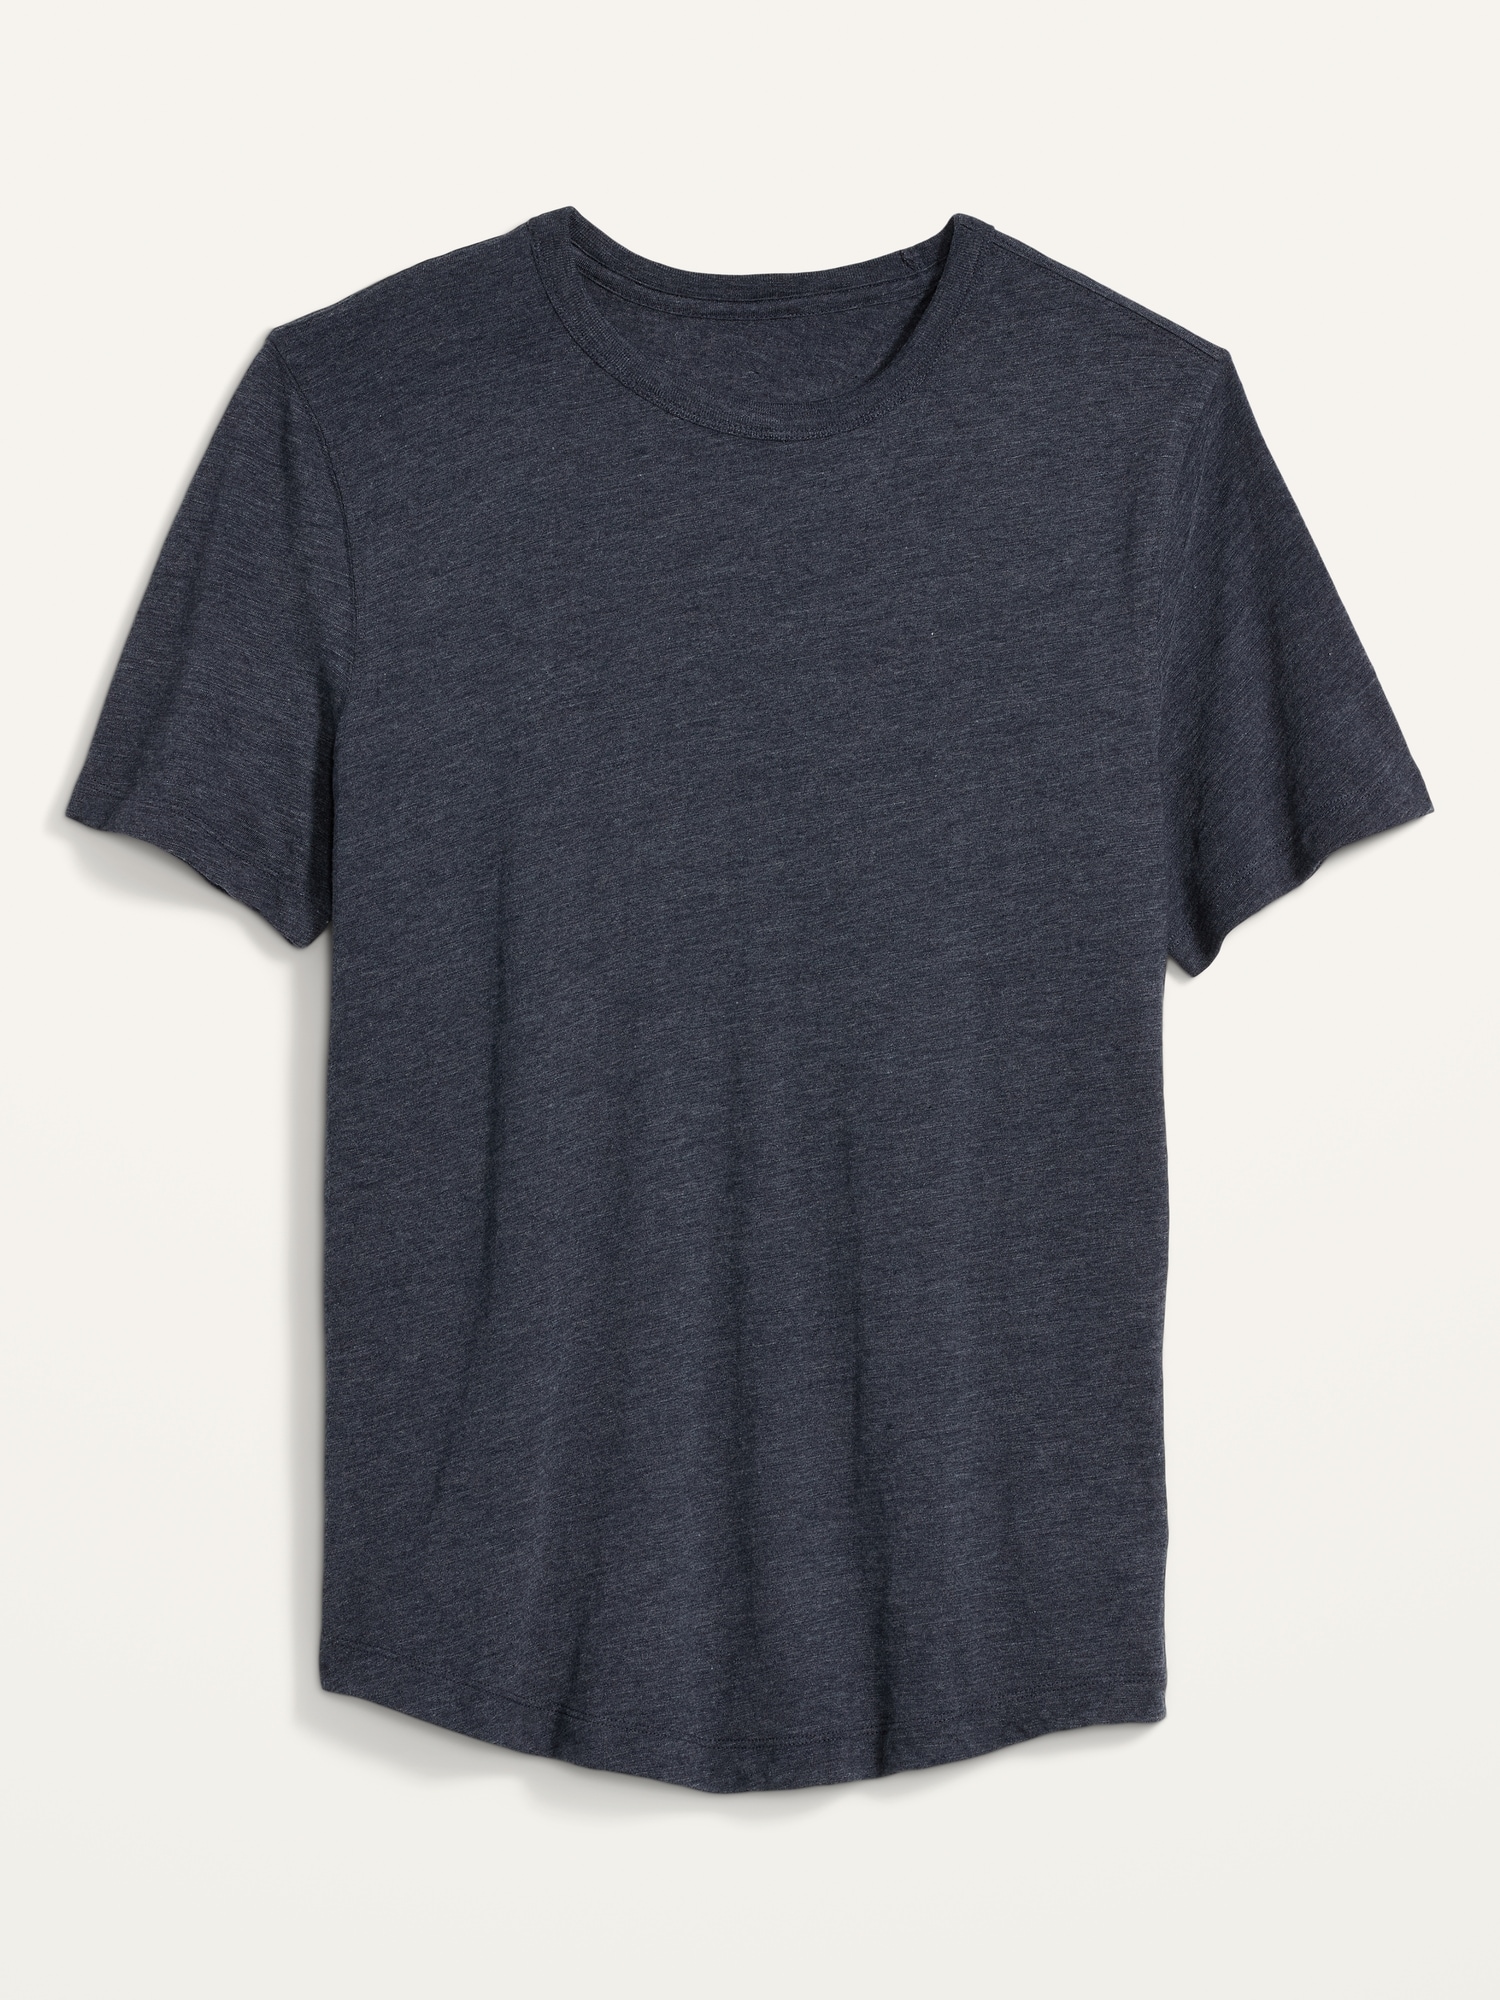 Soft-Washed Slub-Knit Curved-Hem T-Shirt for Men | Old Navy